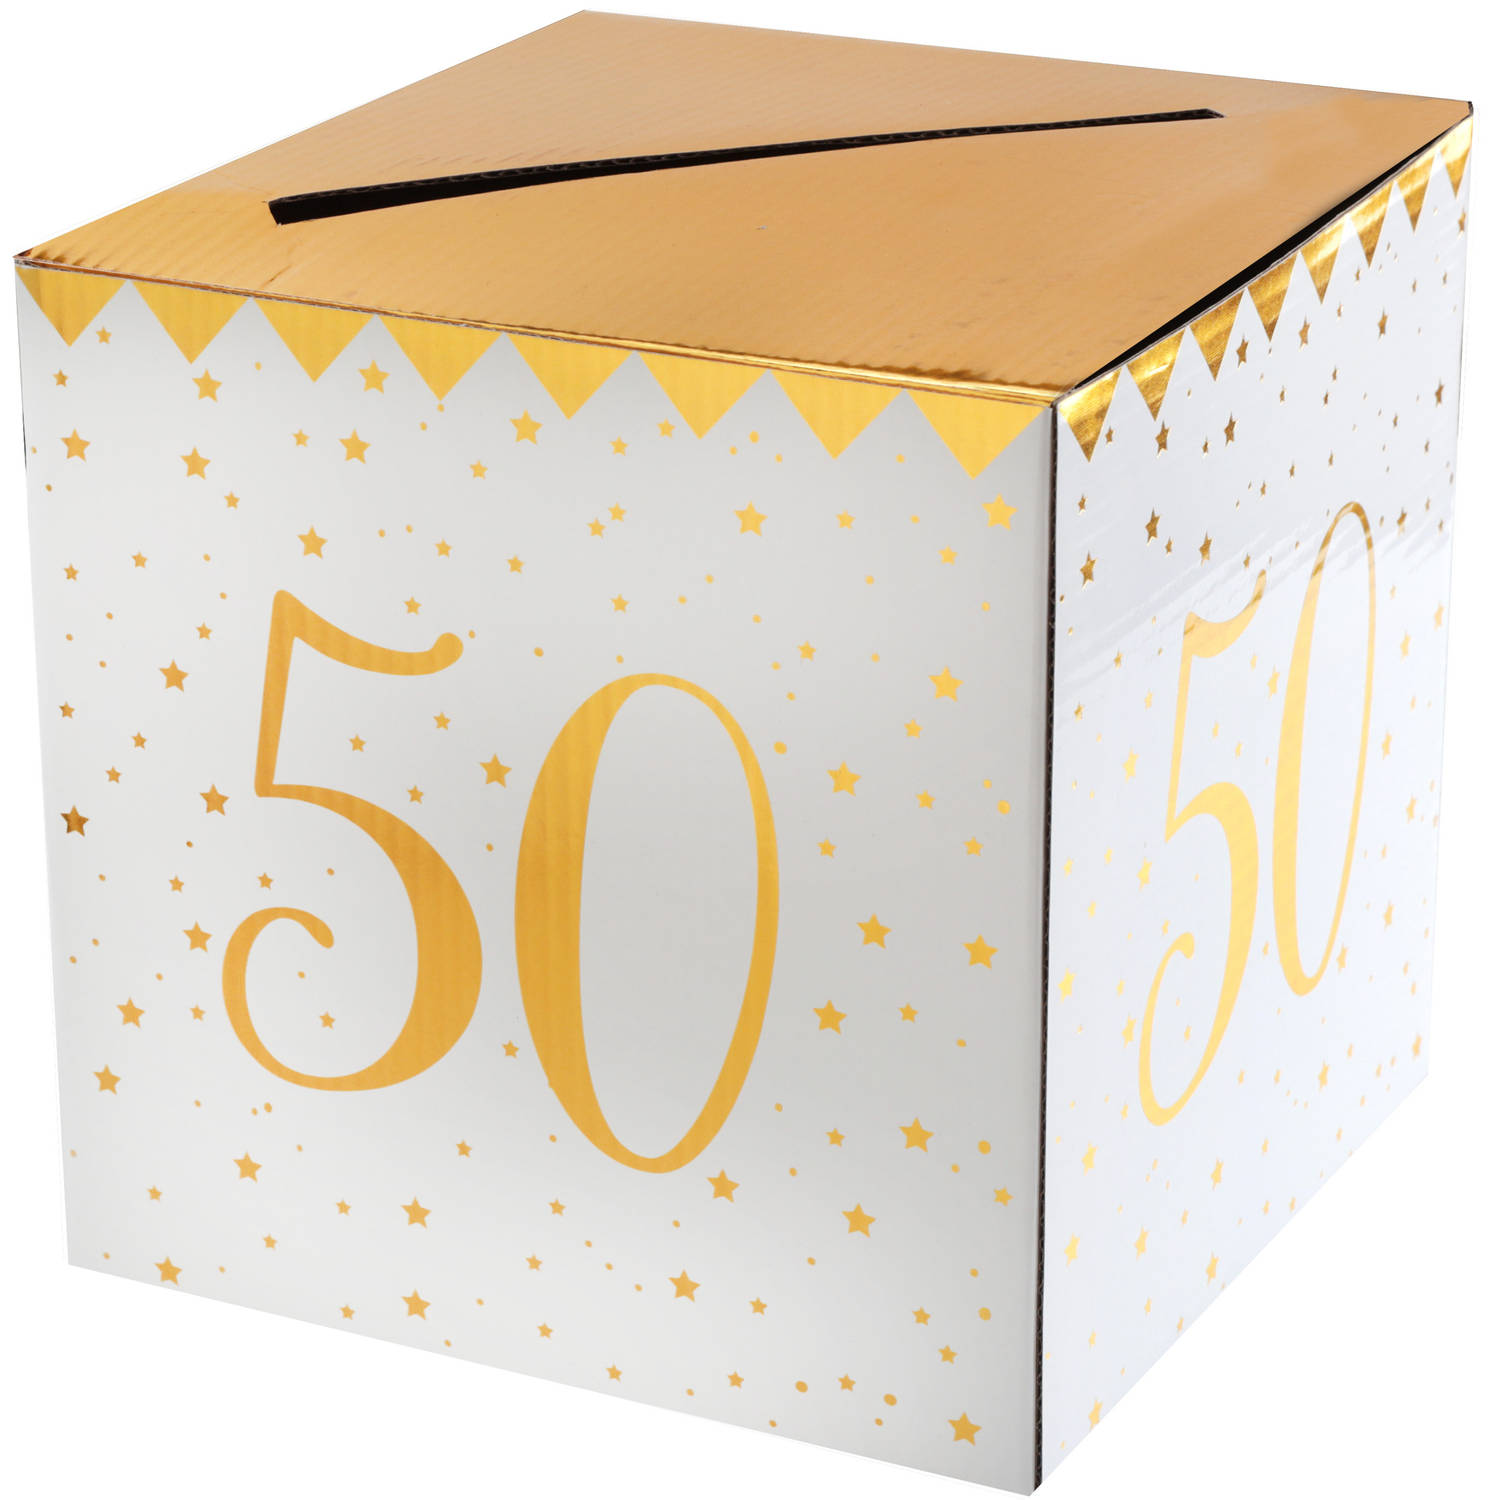 Santex Enveloppendoos - Verjaardag - 50 jaar - wit/goud - karton - 20 x 20 cm - Abraham/Sarah